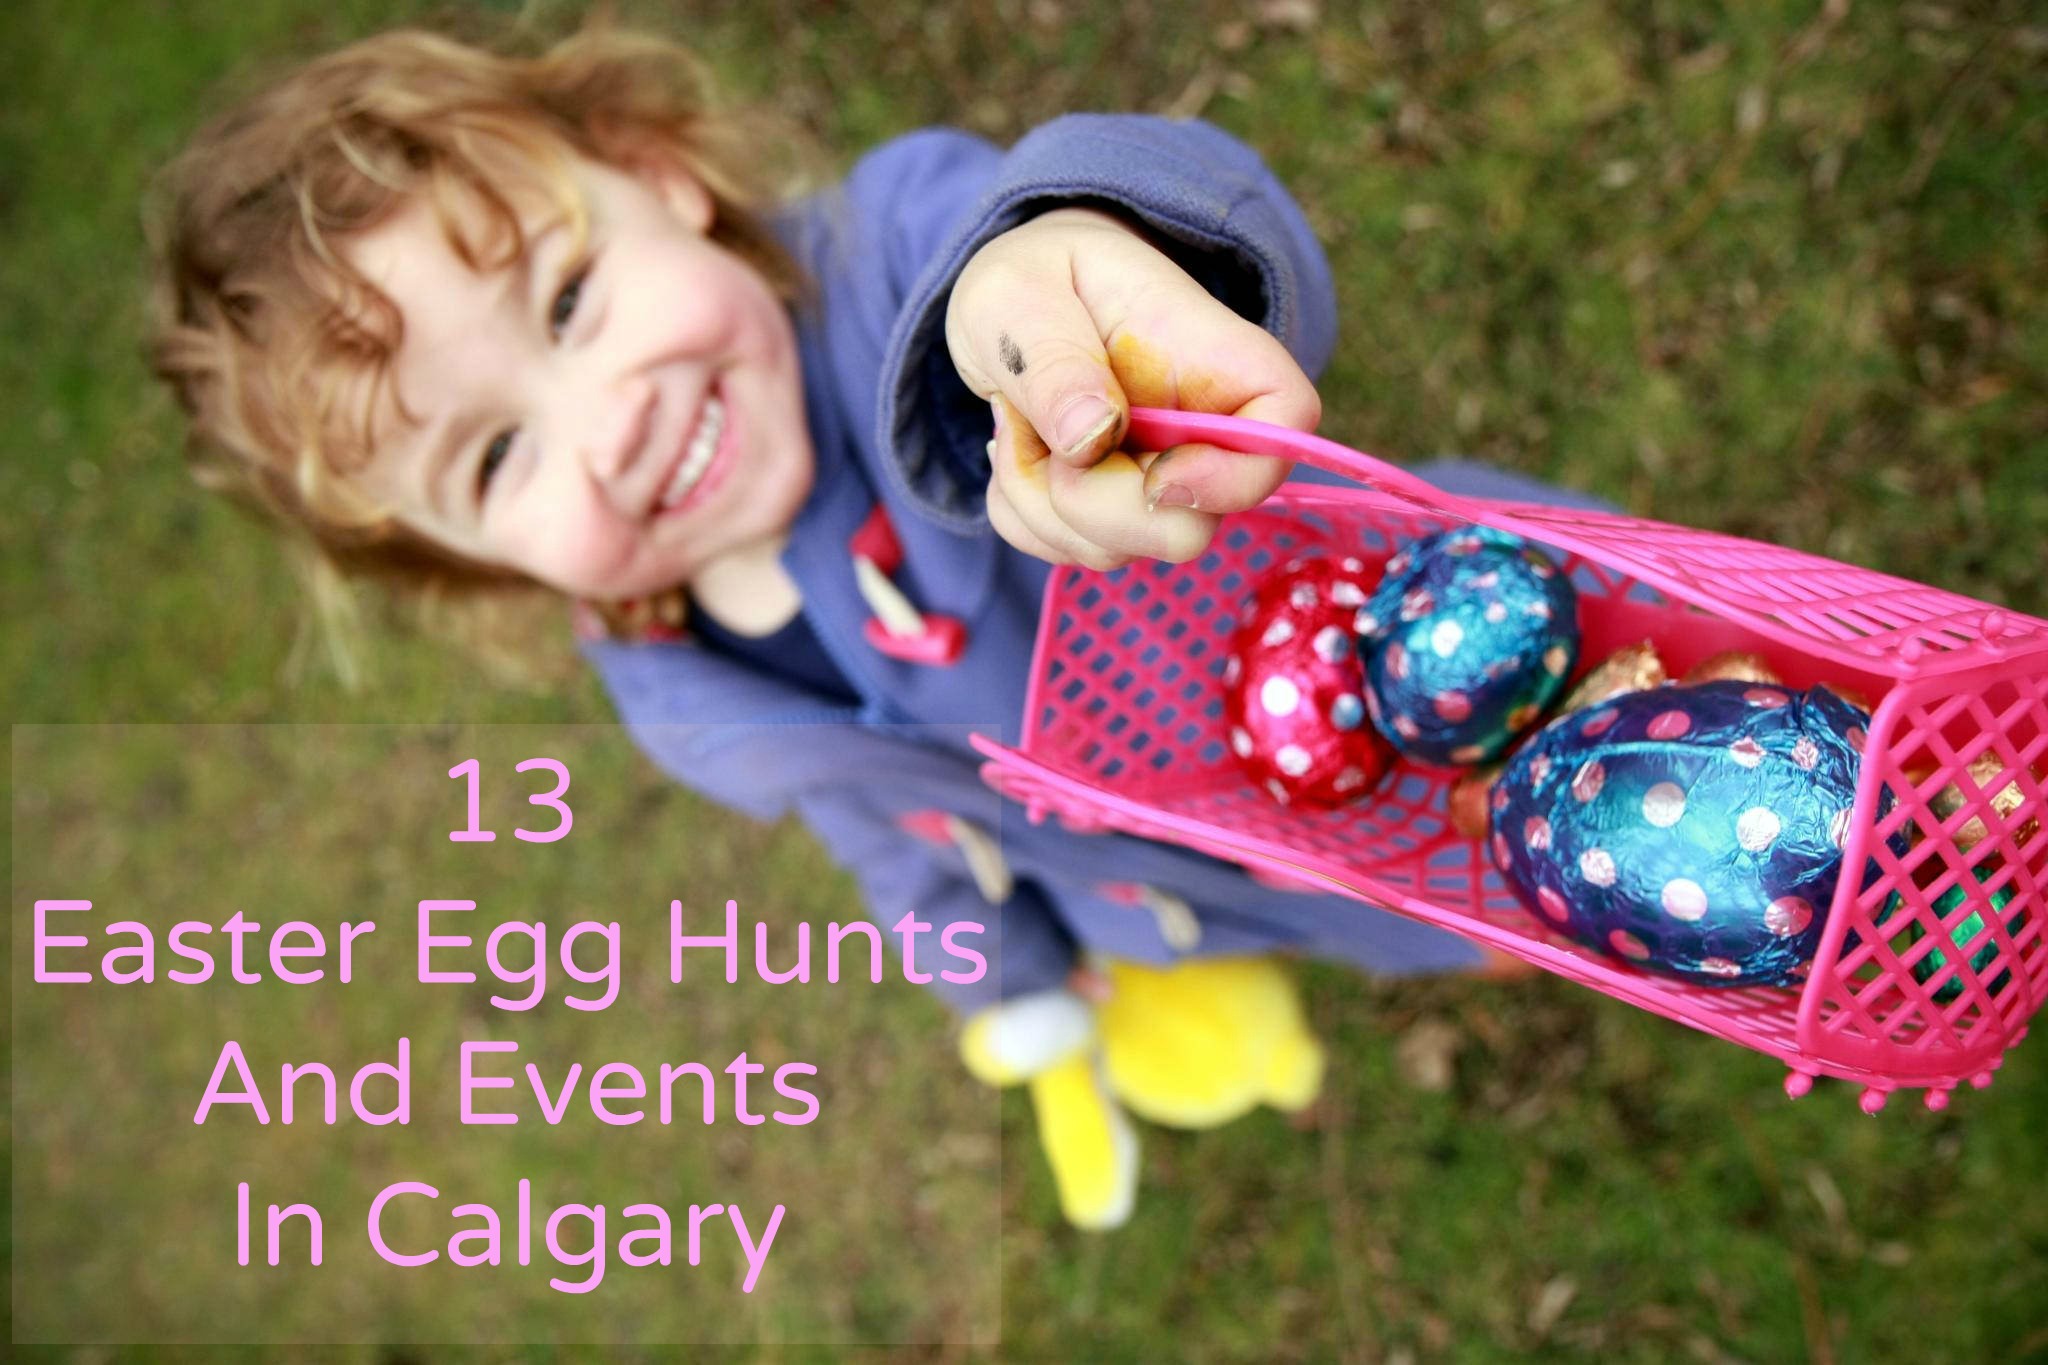 13 Easter Egg Hunts In Calgary For 2016